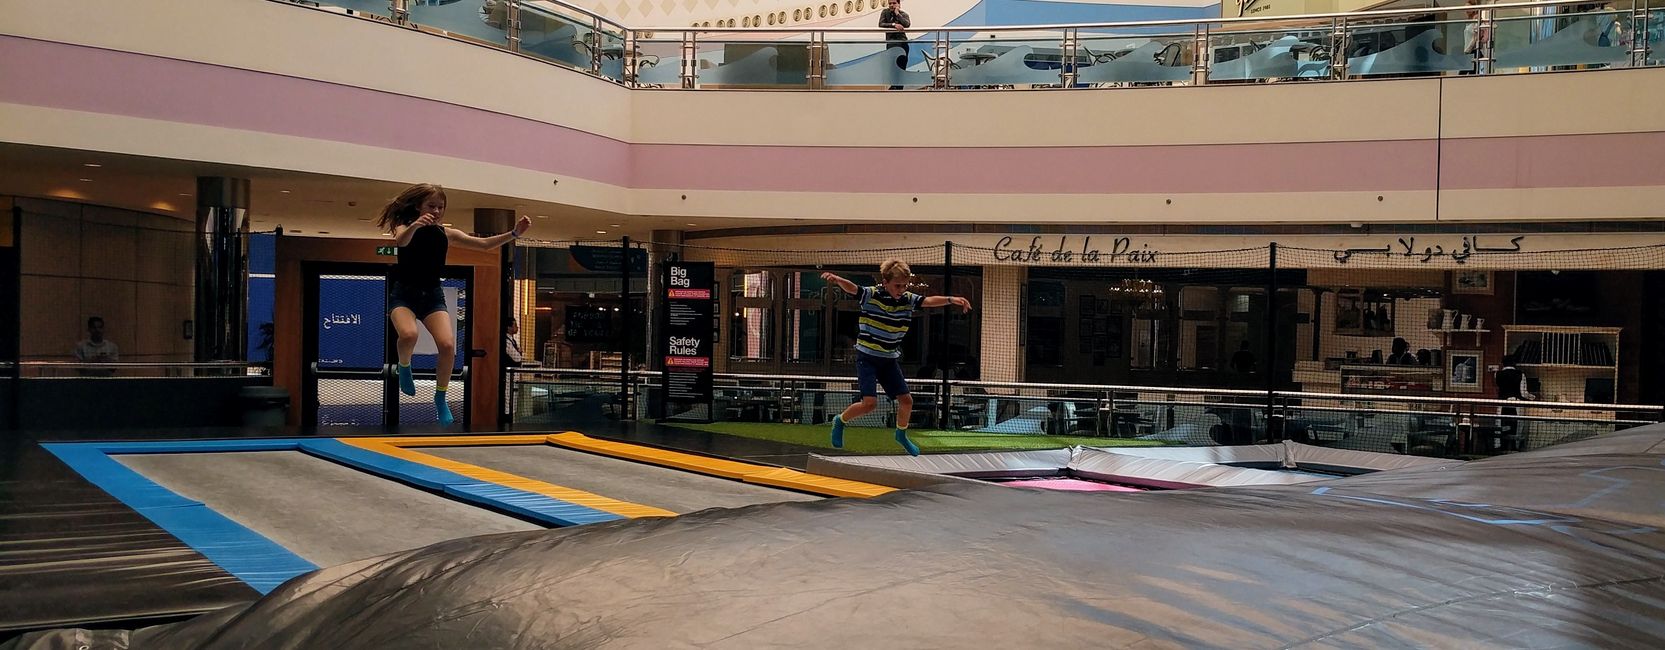 Marina Mall - Bounce Trampoline Park